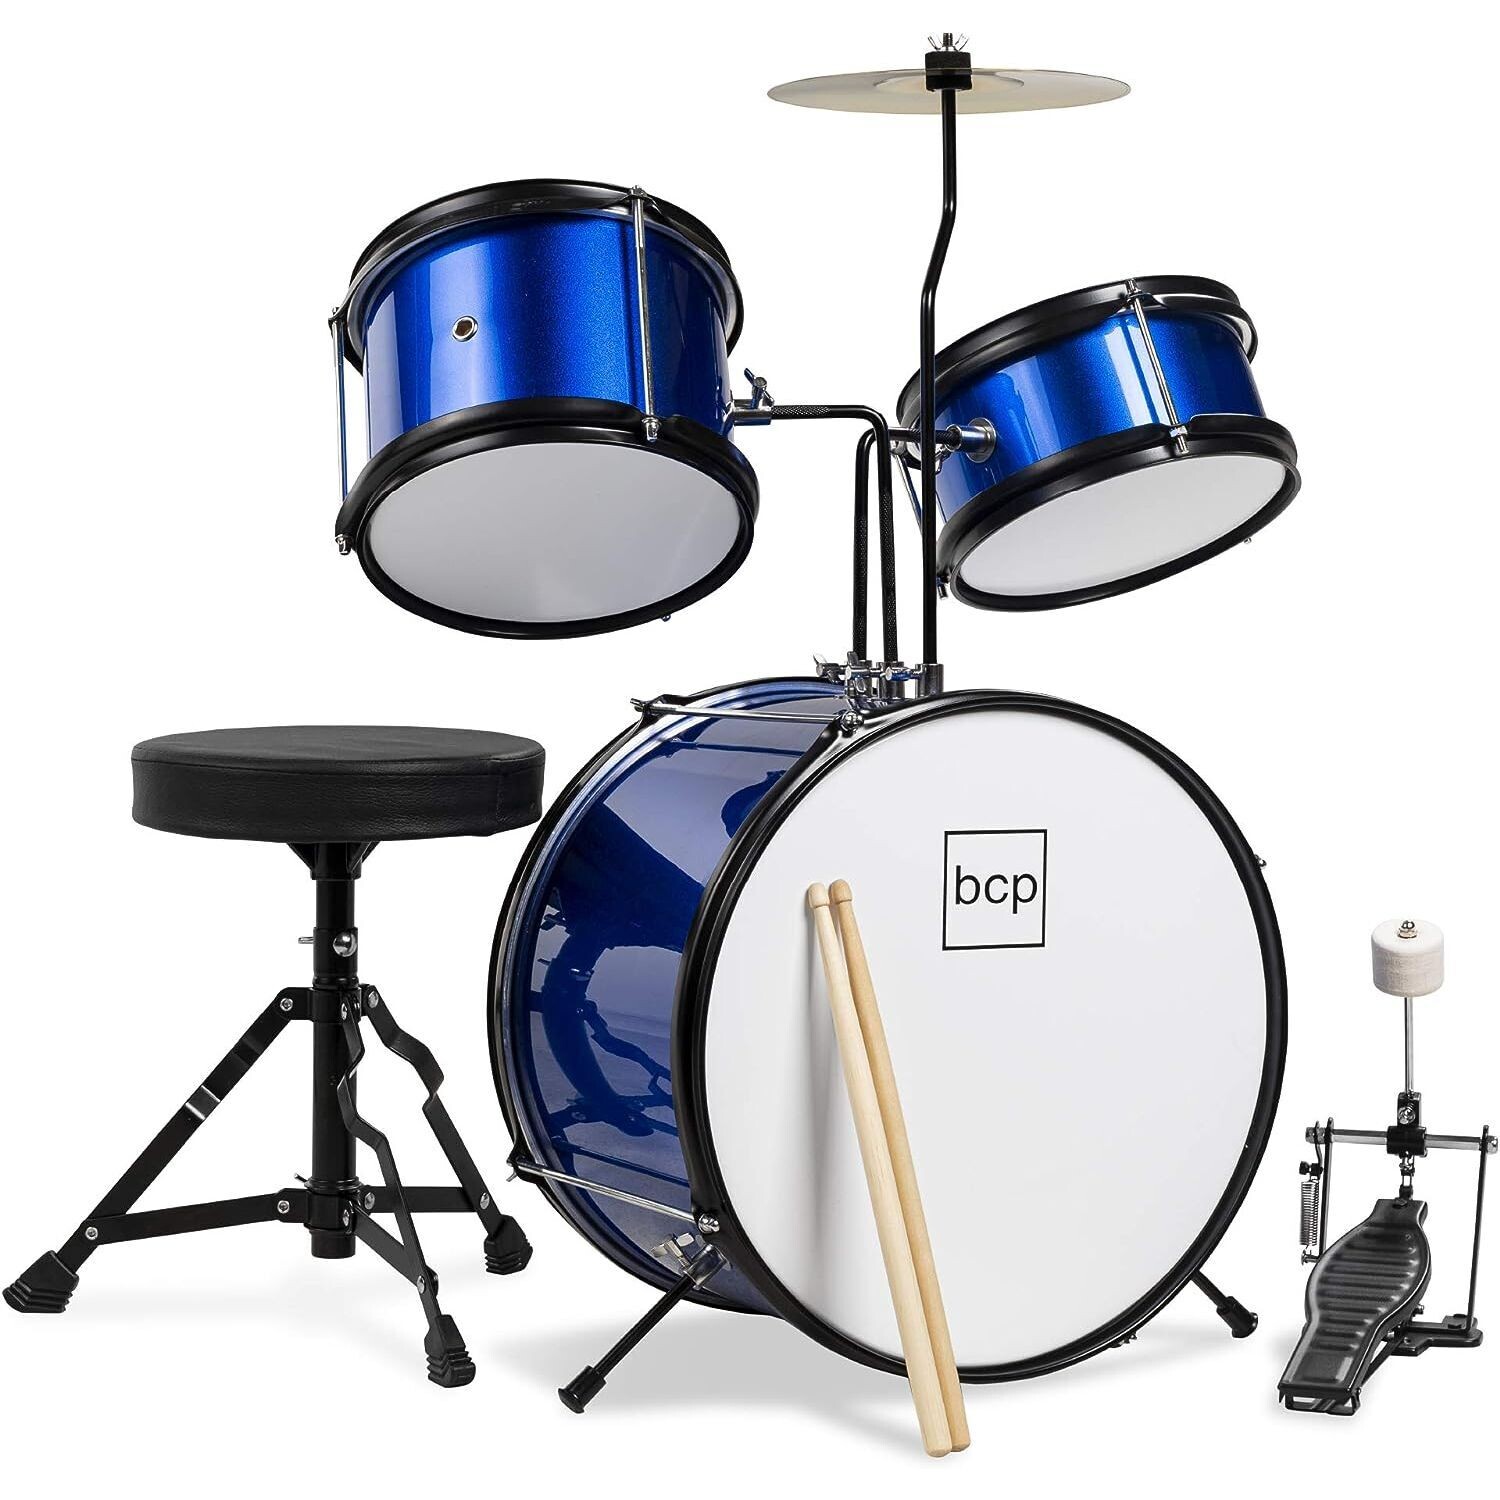 LW Essentials Basic 3-Piece Junior Kids Drum Set with Hardware - Blue